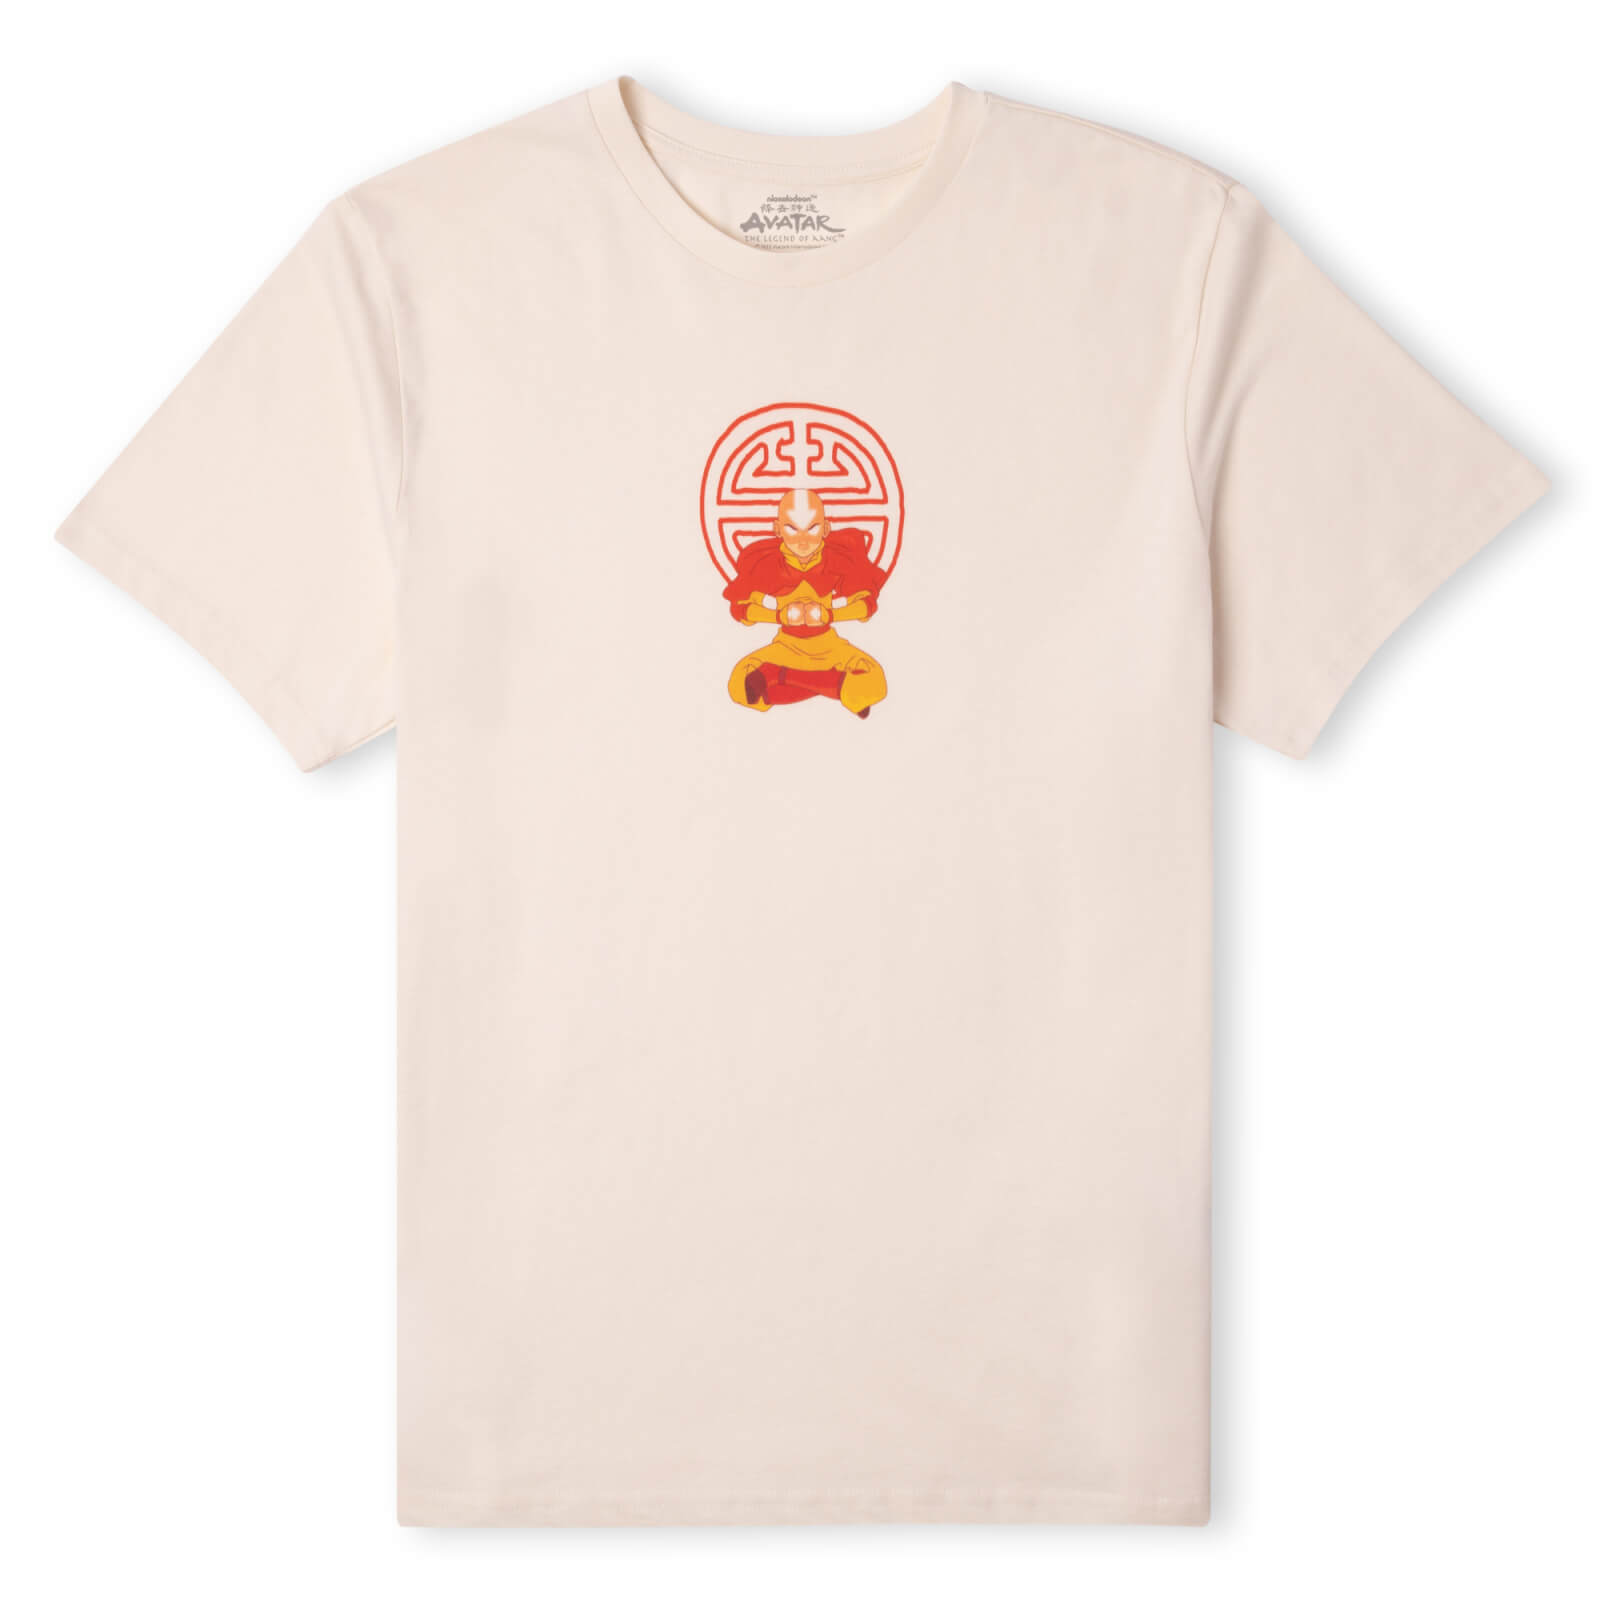 Avatar State Unisex T-Shirt - Cream - M